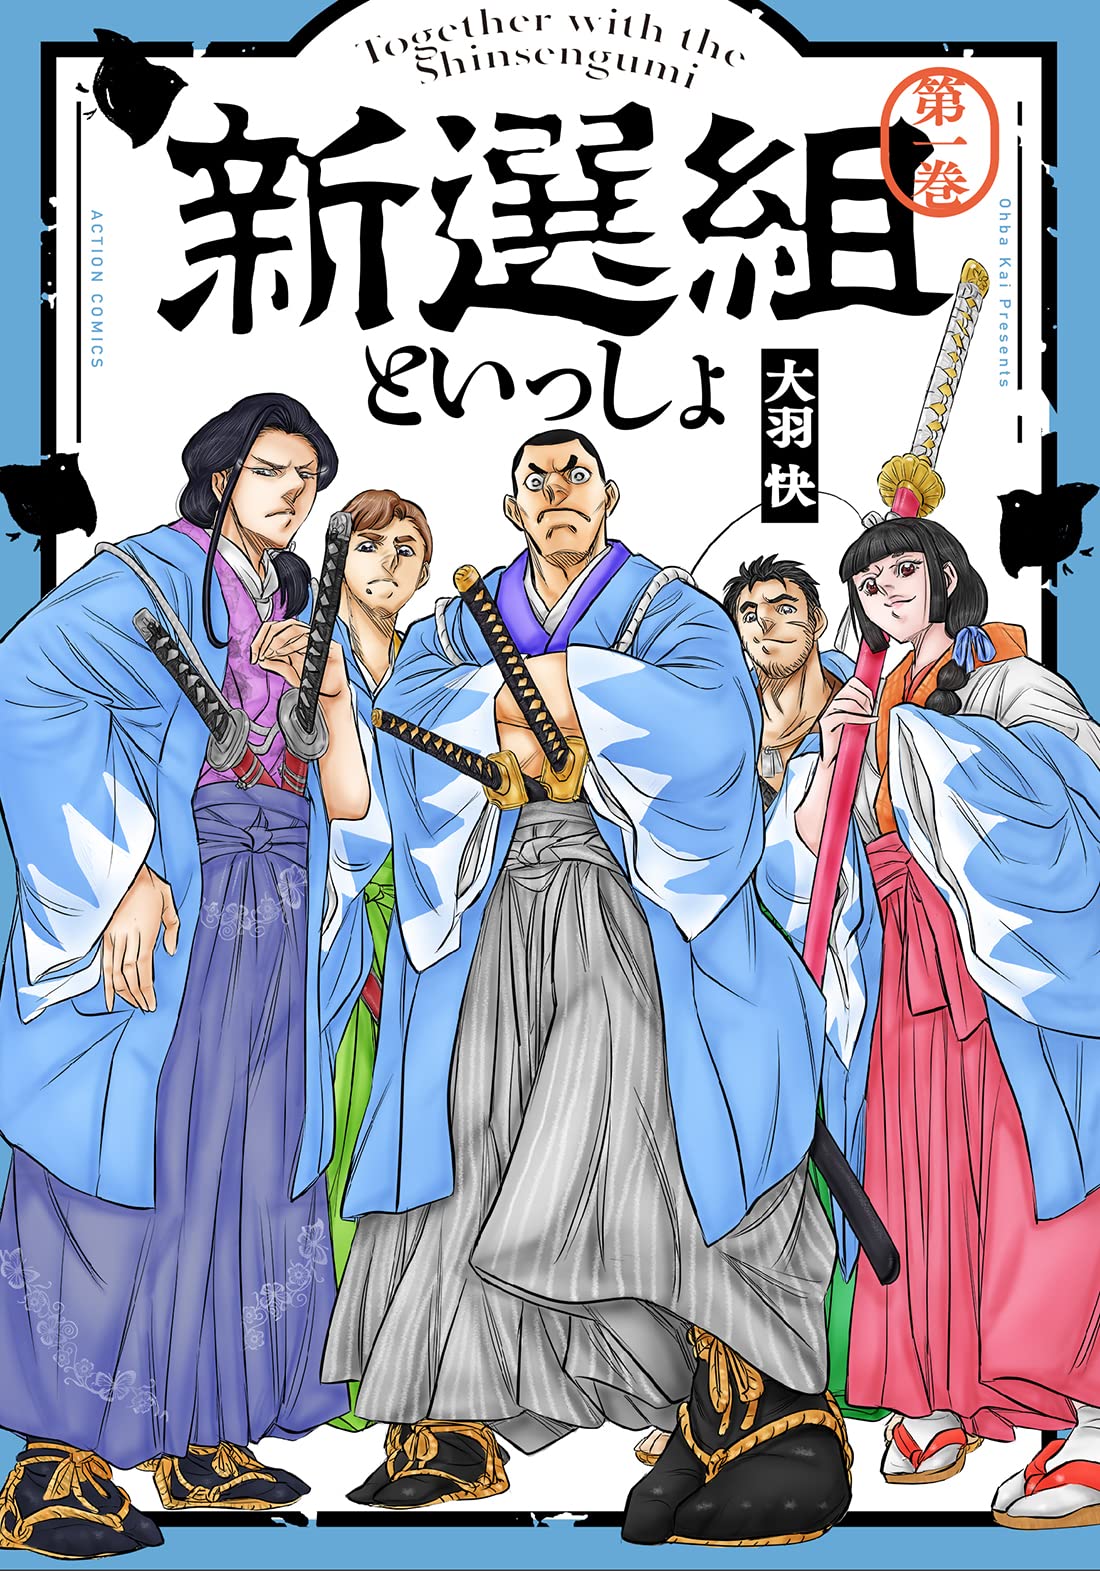 Free: Anime Hakuōki Samurai Touken Ranbu Shinsengumi, Anime transparent  background PNG clipart - nohat.cc